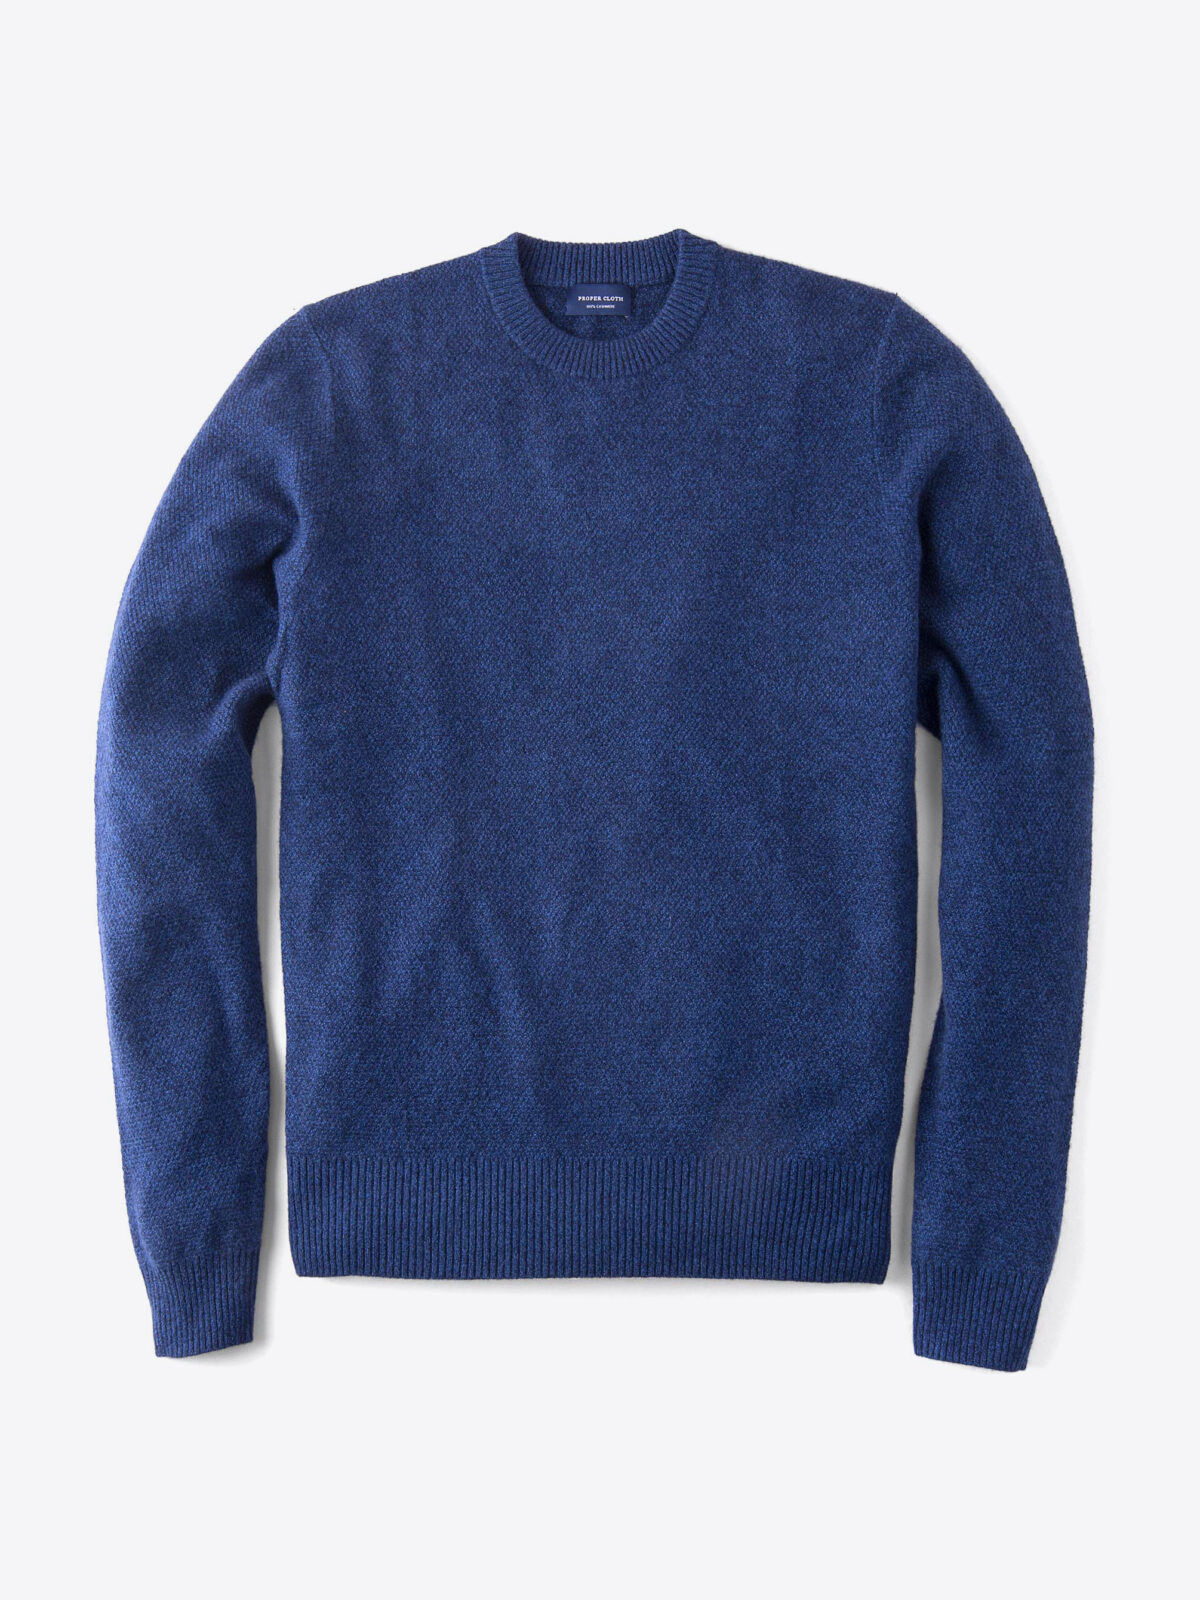 Indigo Cobble Stitch Cashmere Sweater